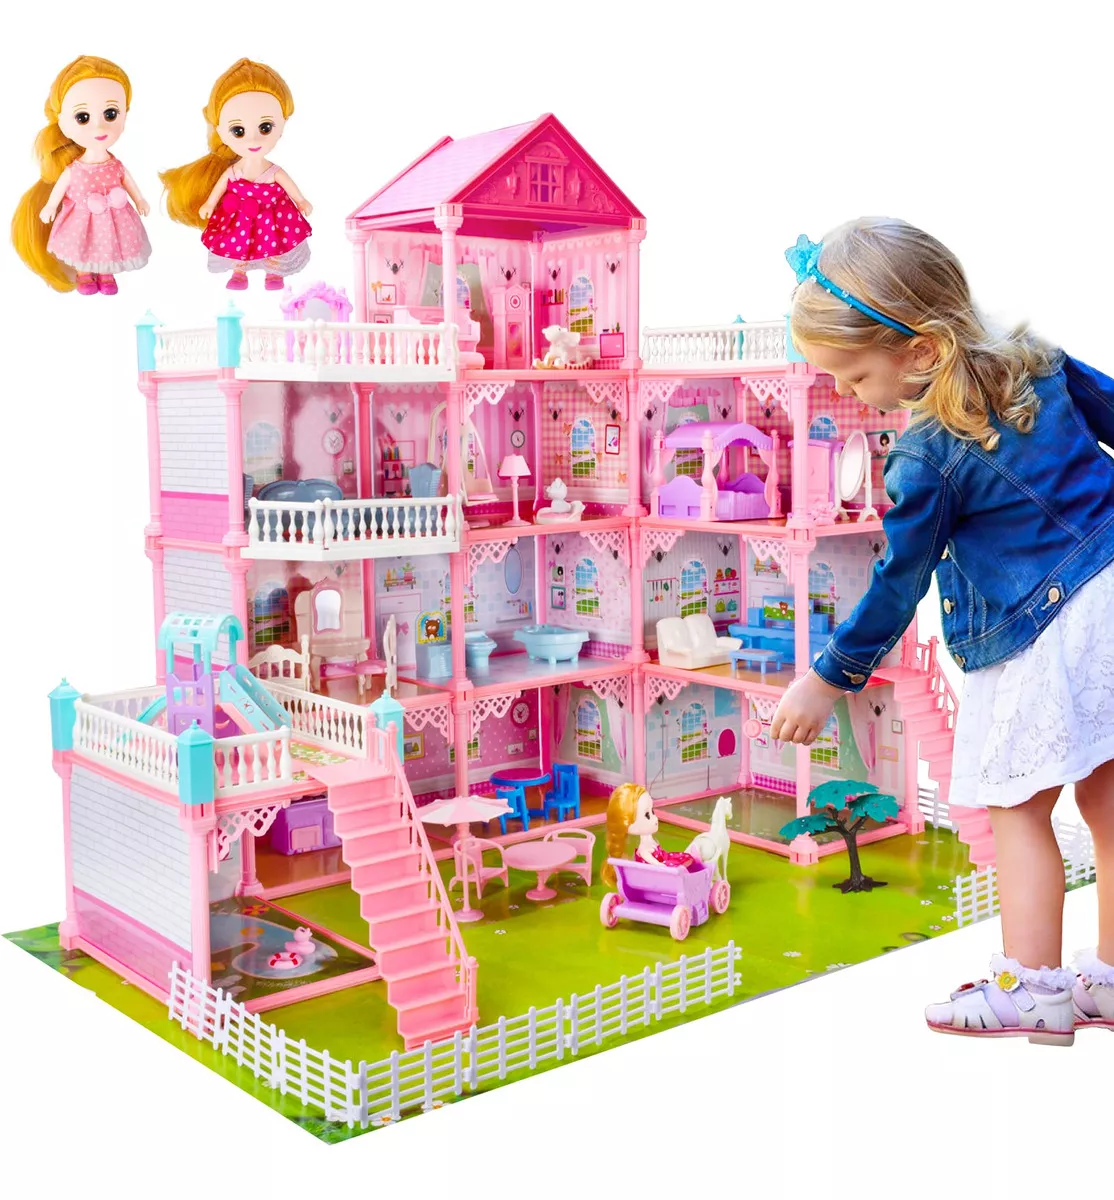 Segunda imagen para búsqueda de casa de muñecas